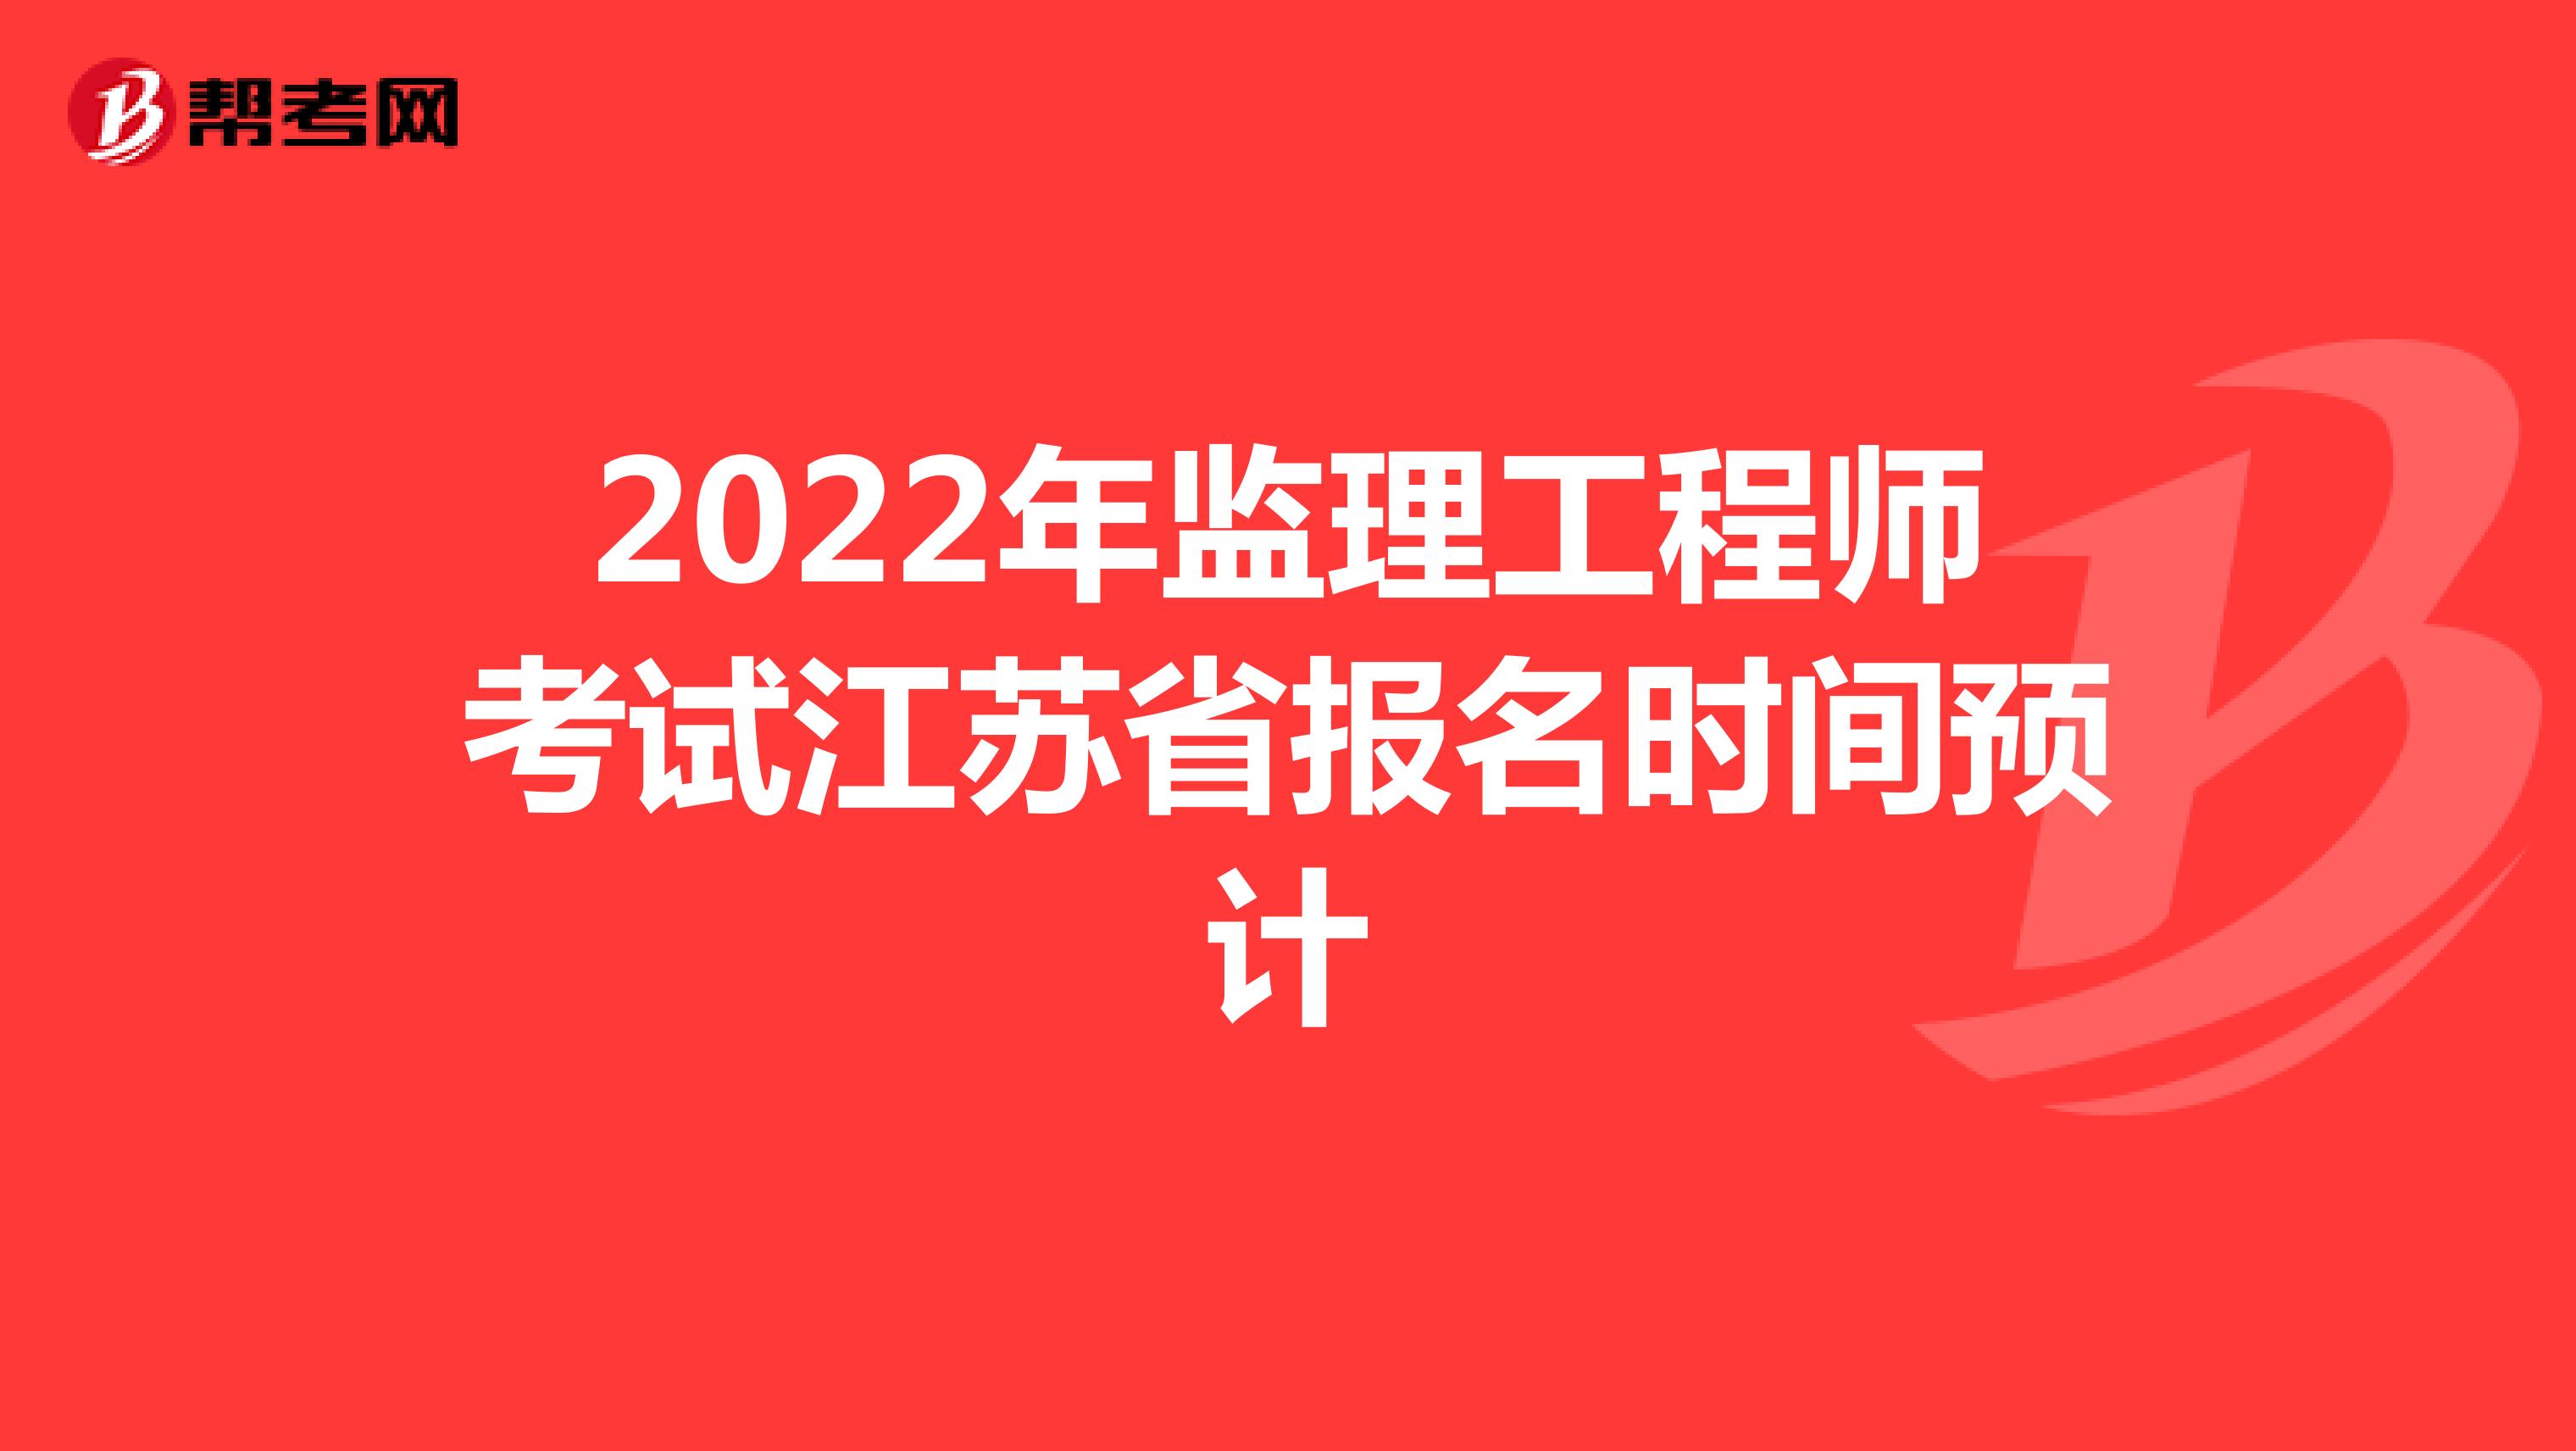 2022年监理工程师考试江苏省报名时间预计